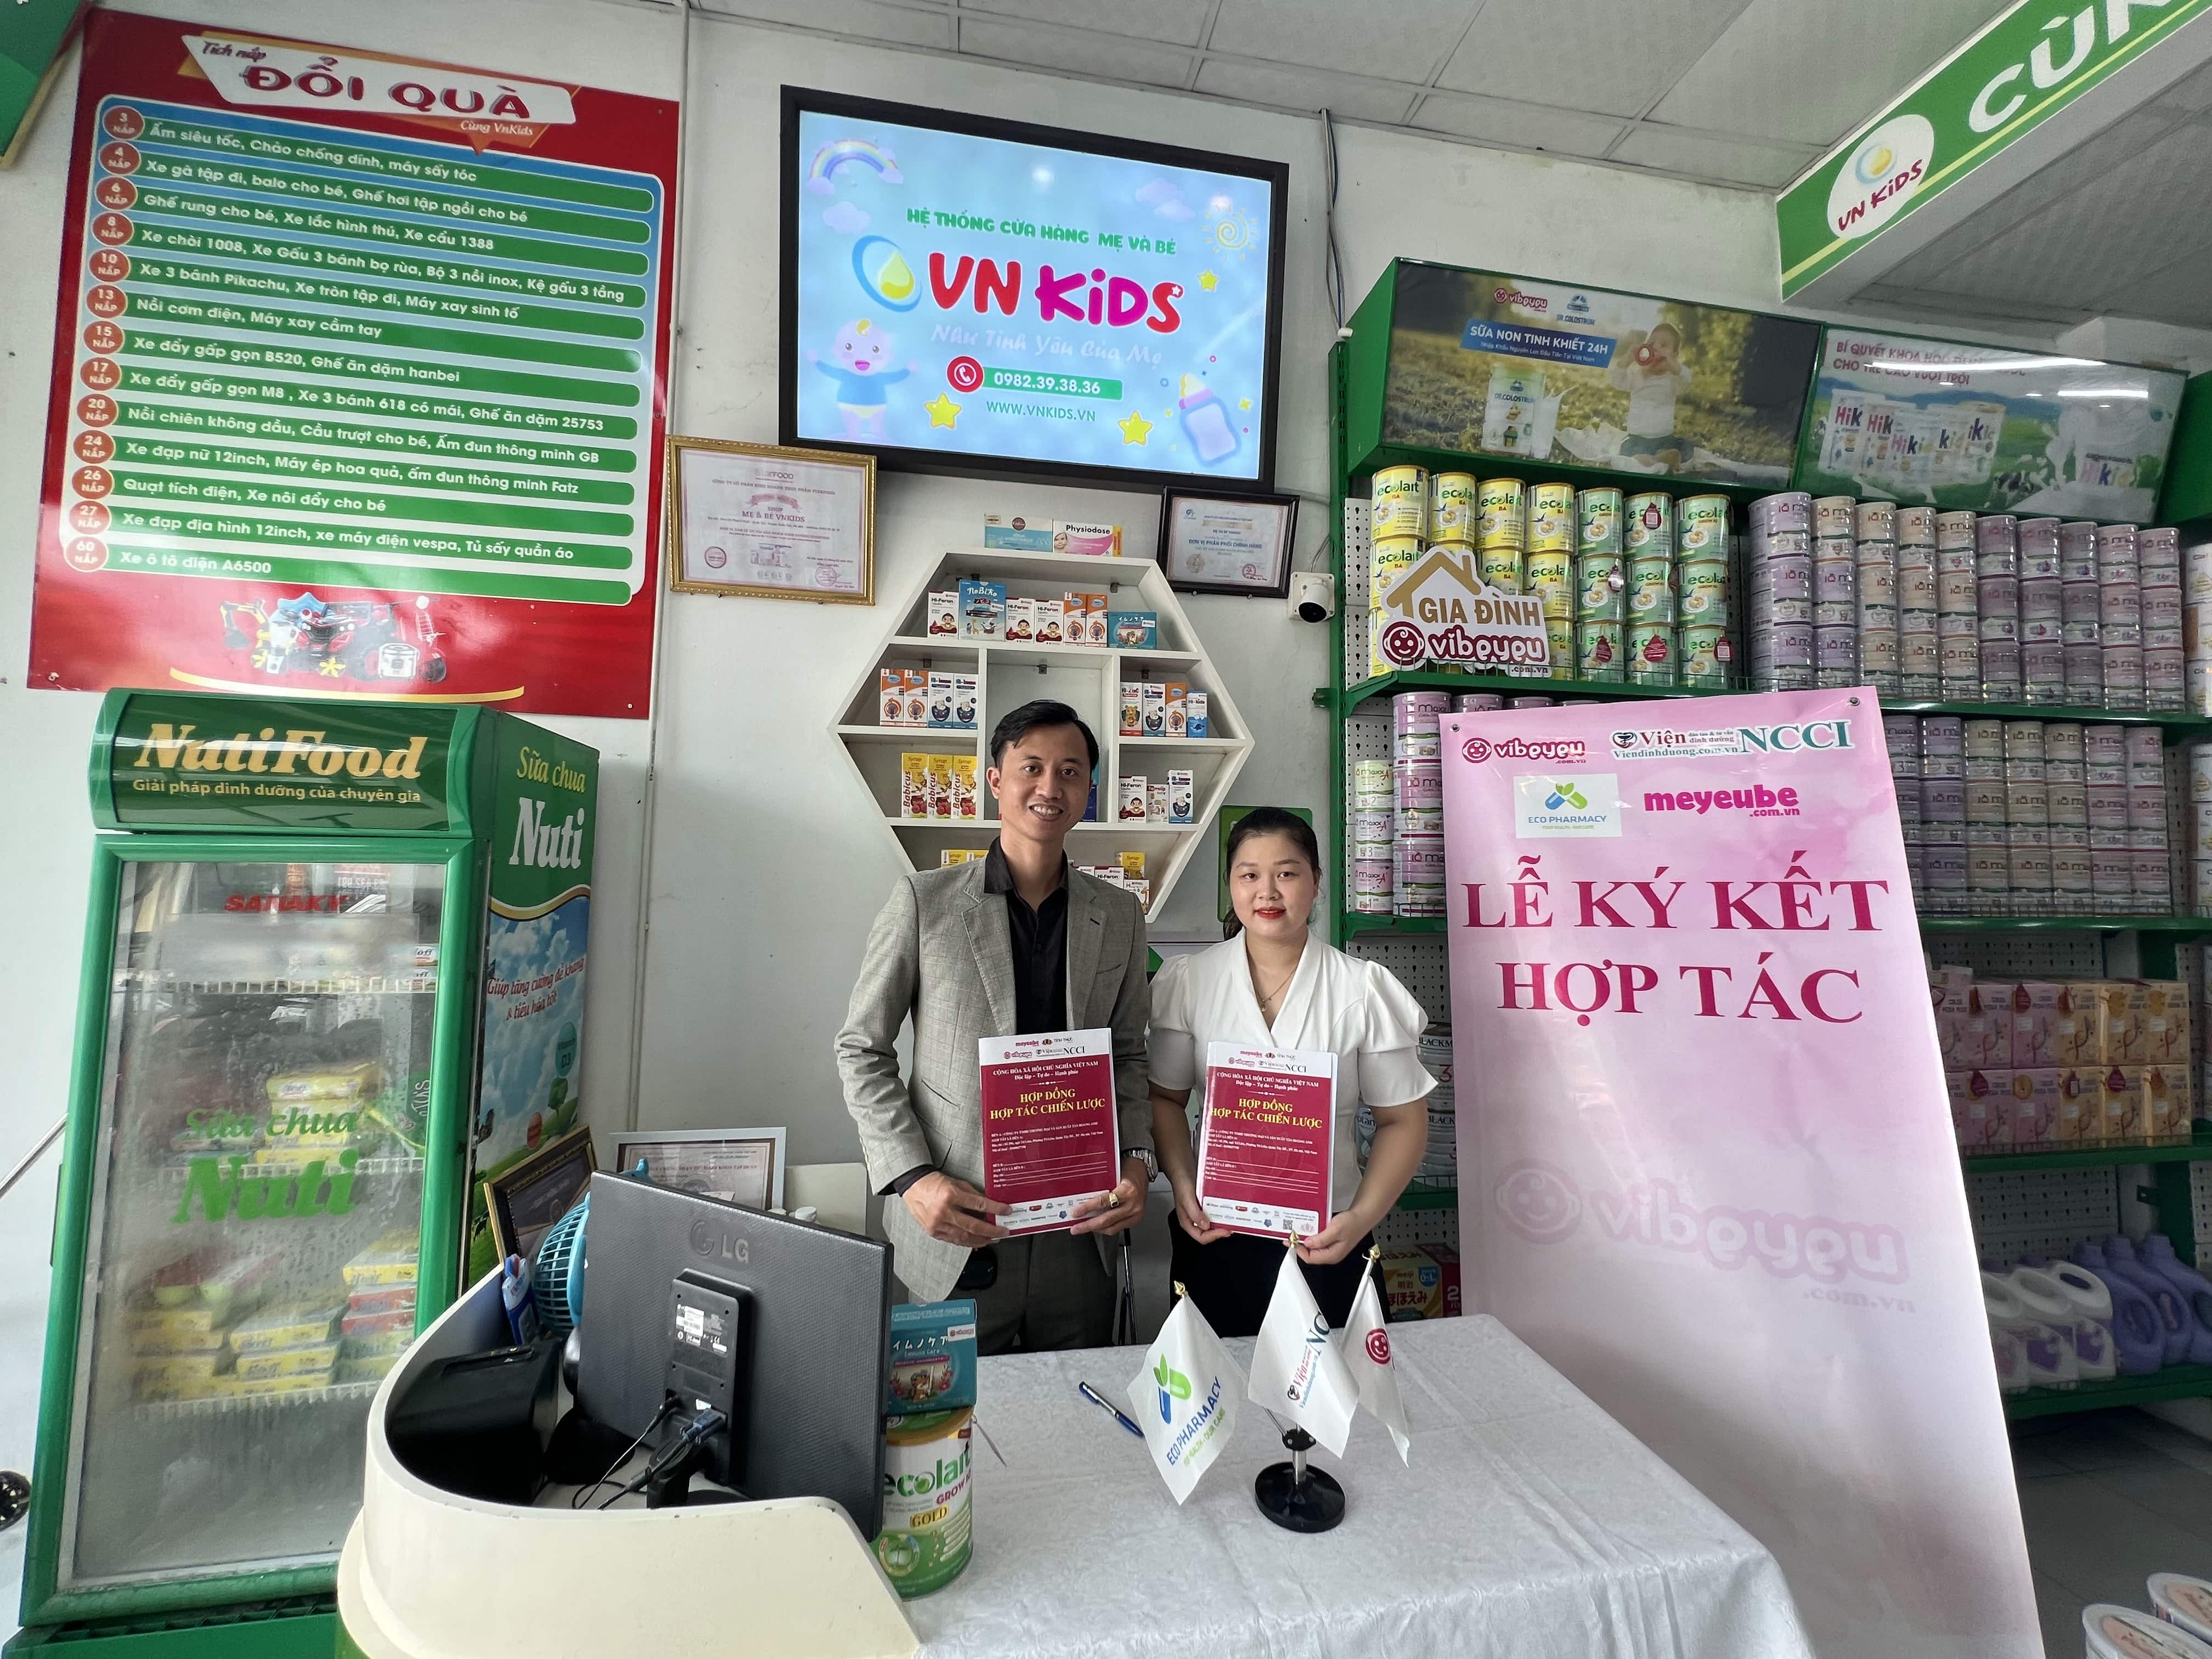 Lễ ký kết hợp tác: Hệ thống dinh dưỡng Vibeyeu và Hệ thống cửa hàng mẹ và bé VnKids